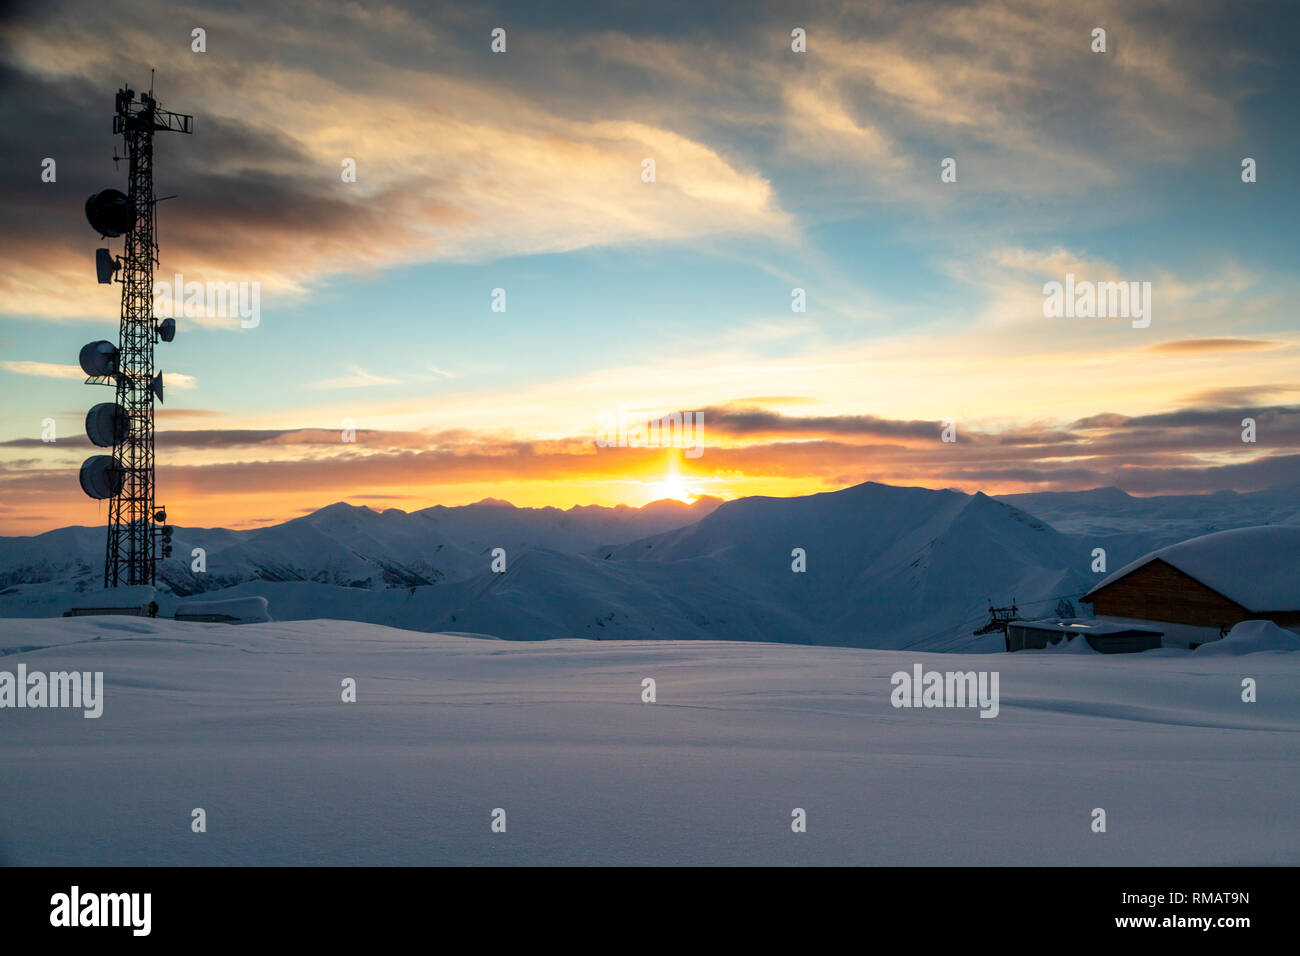 Kommunikation Turm mit Antennen und Satellitenschüsseln im Hintergrund einer winterlichen Bergwelt, bei Sonnenuntergang. Gudauri, Georgien Stockfoto